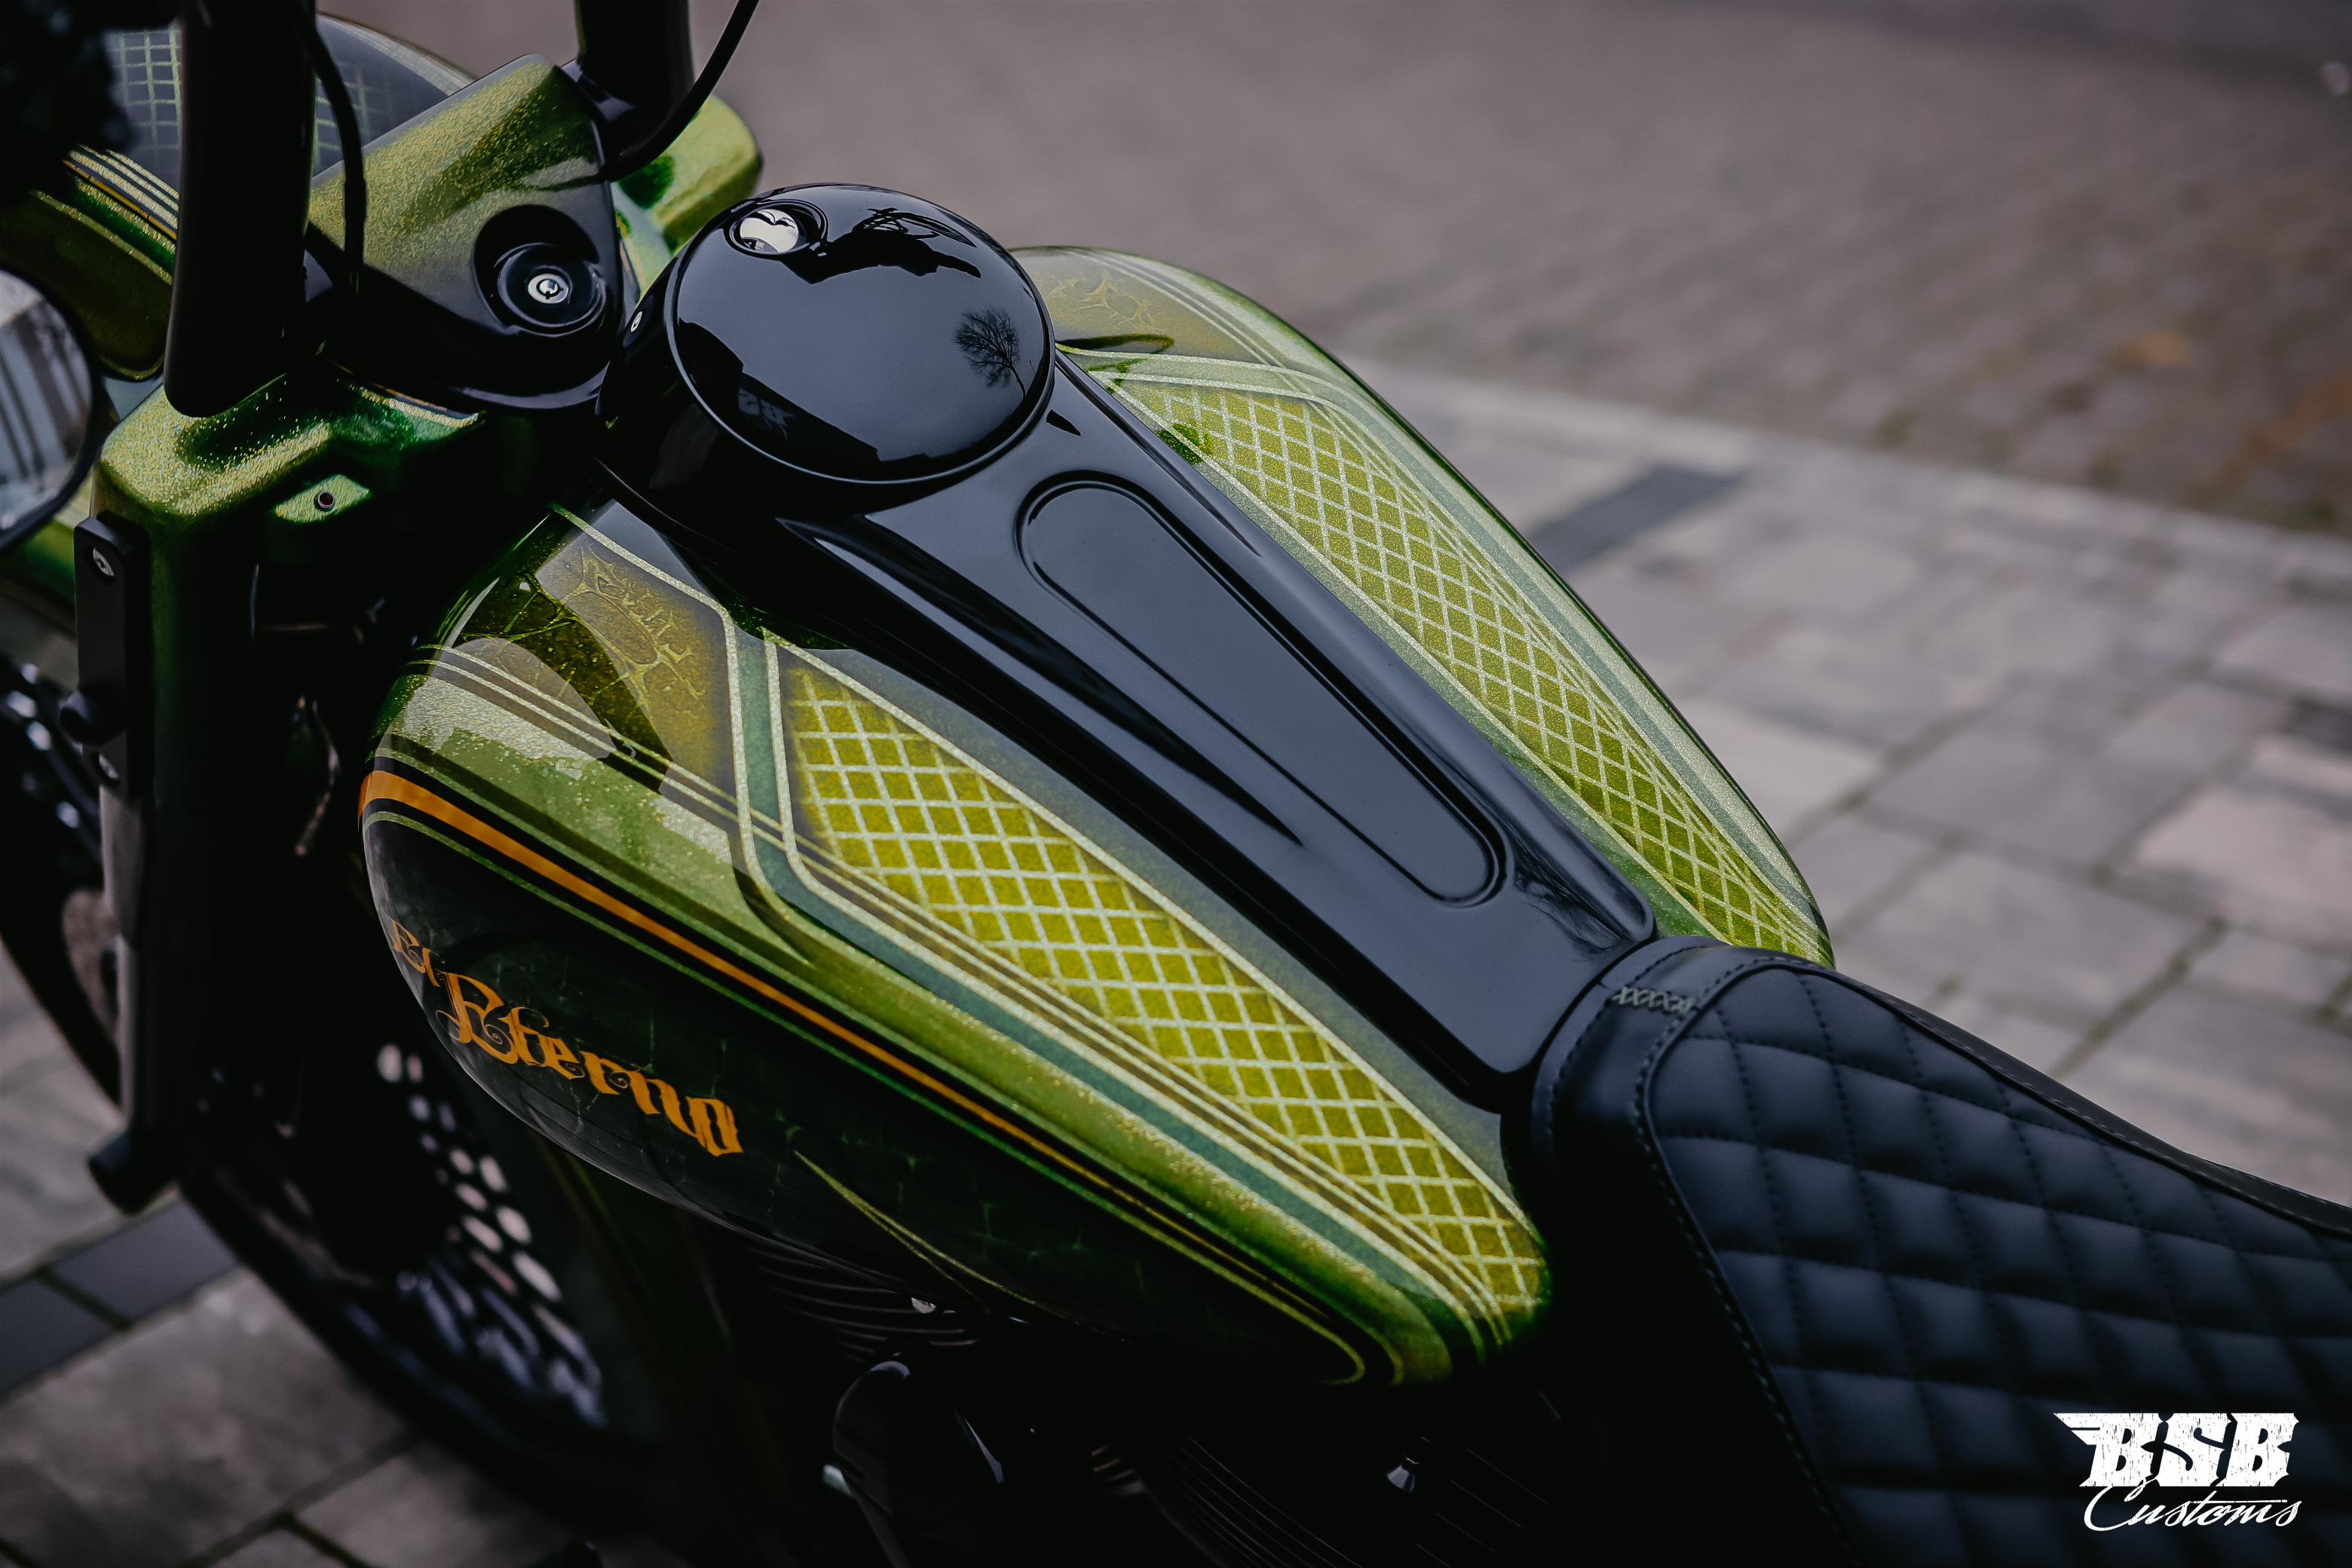 2014 Harley Davidson FLHXS Street Glide mit einem Mega Umbau auf Mexican Chicano Umbau 